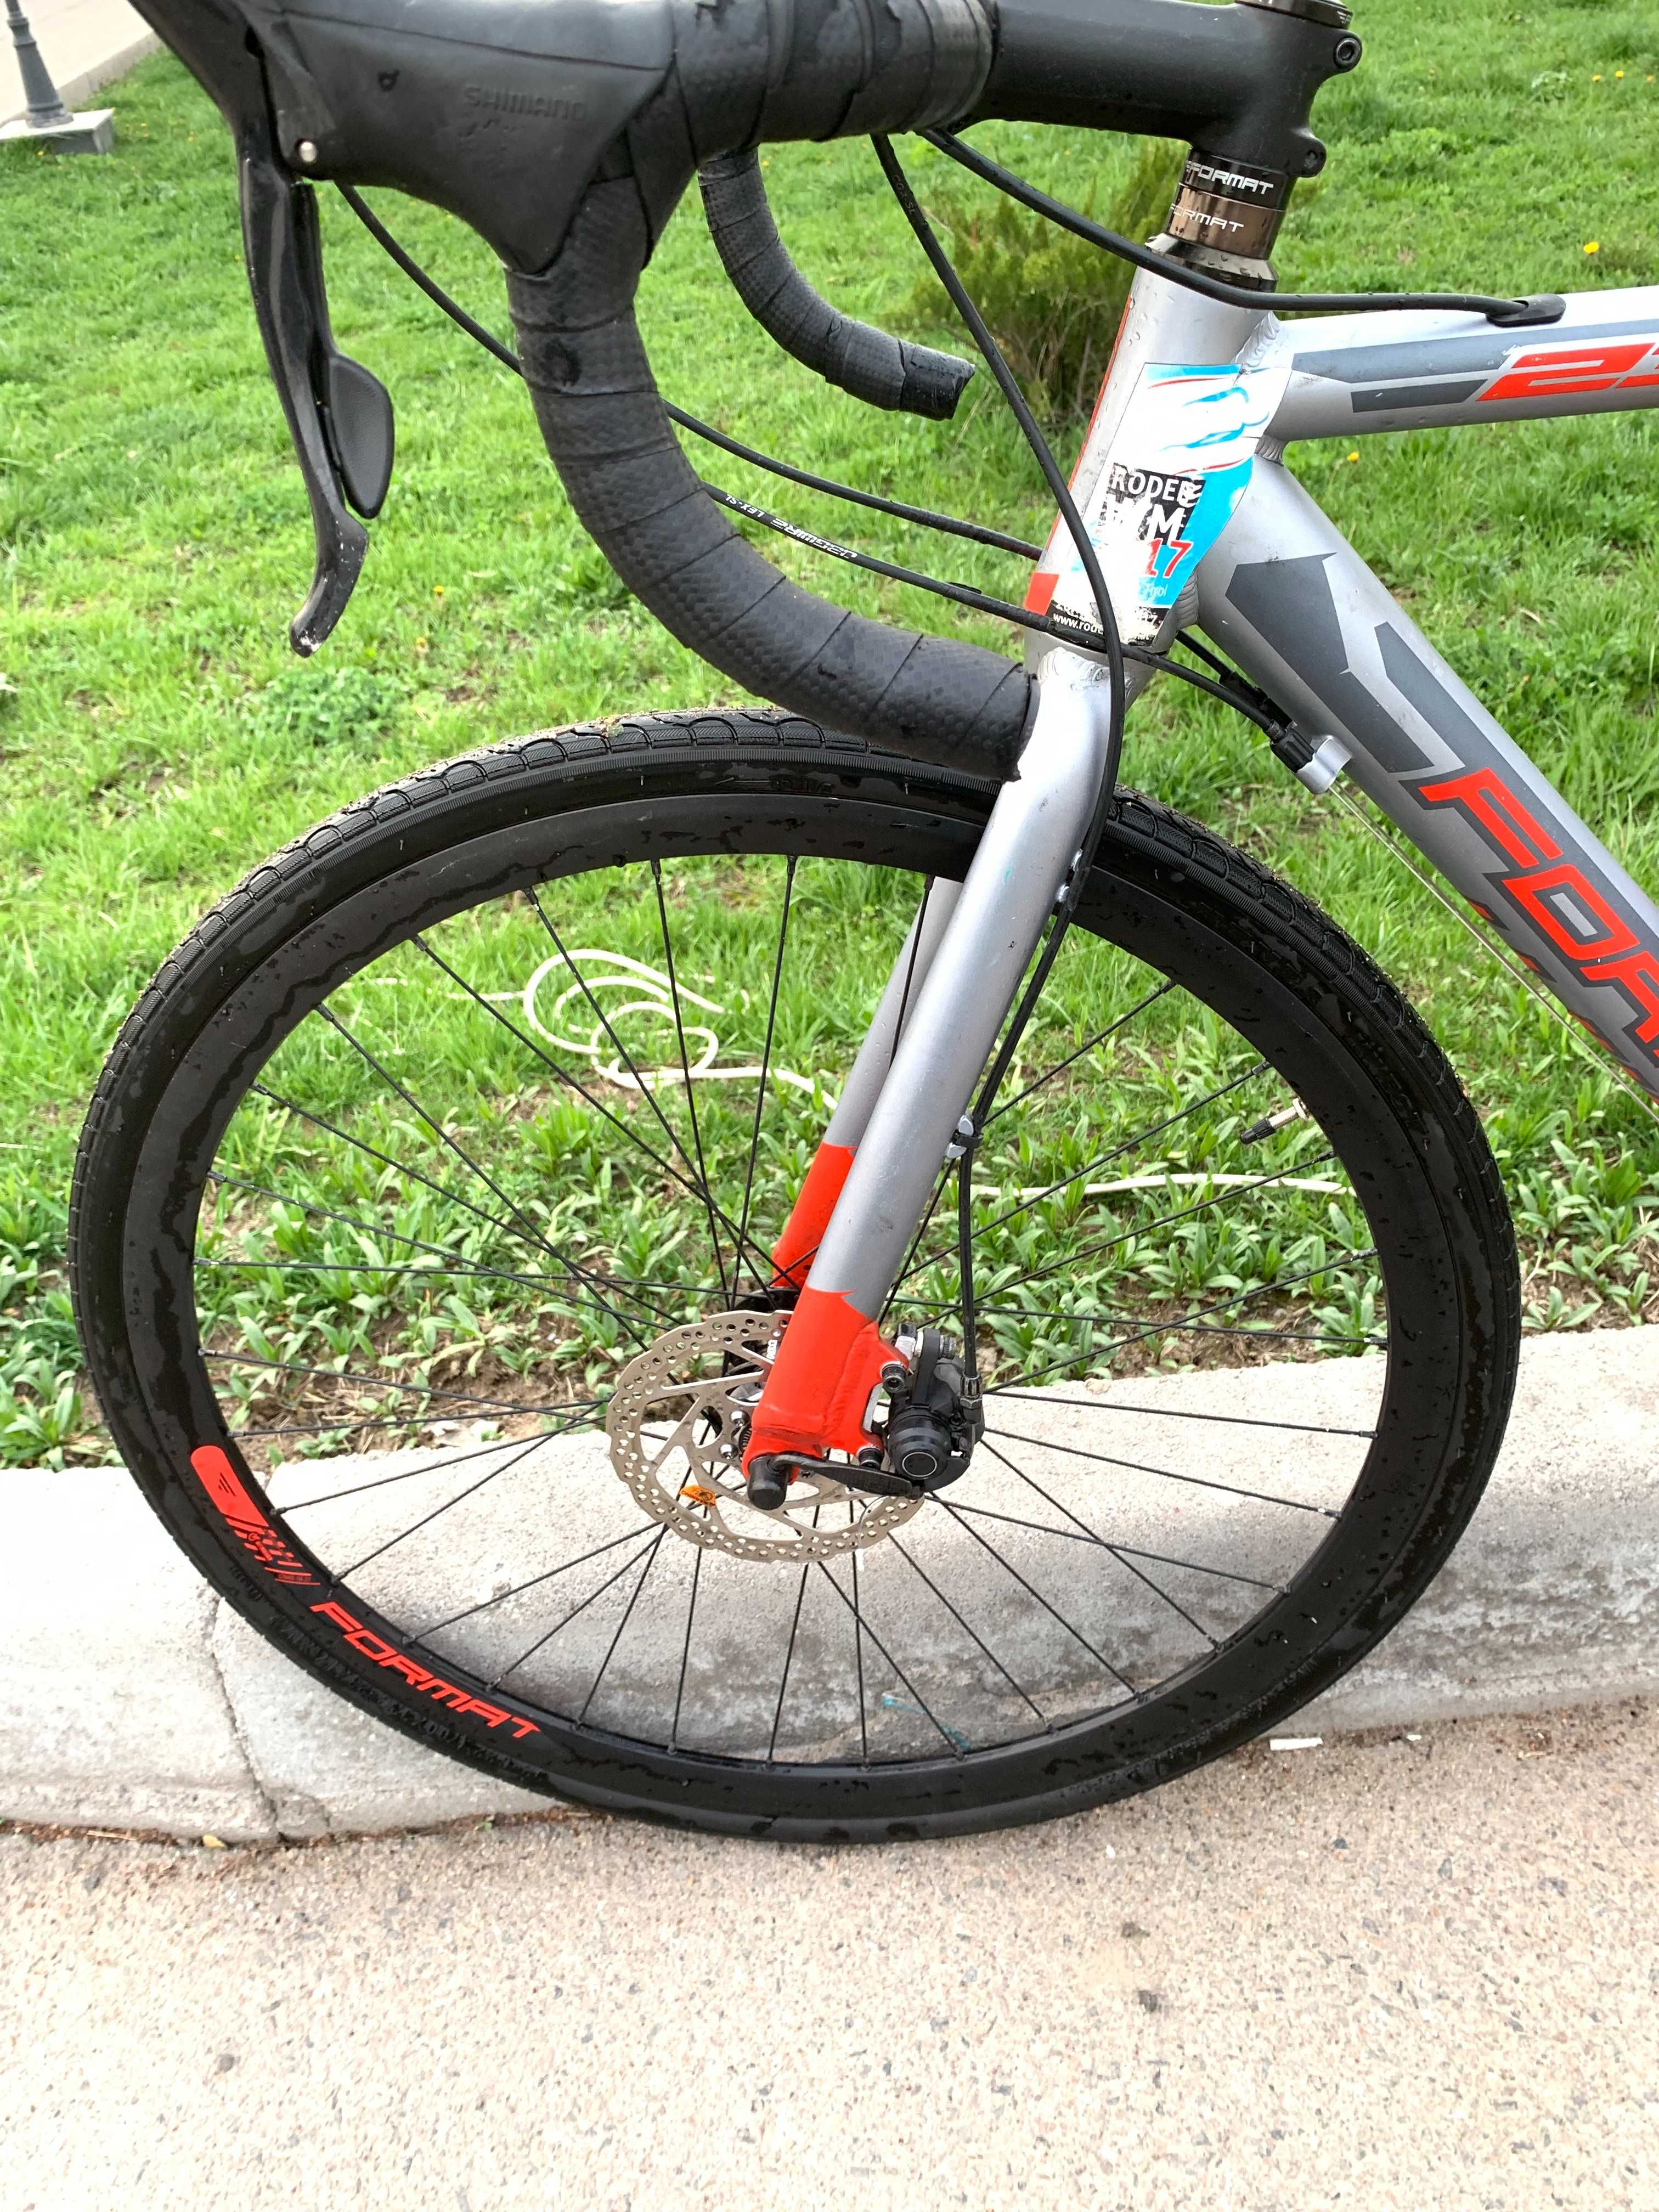 Шоссейный велосипед Format 2313 рост 550 мм 2016 серый/красный мат